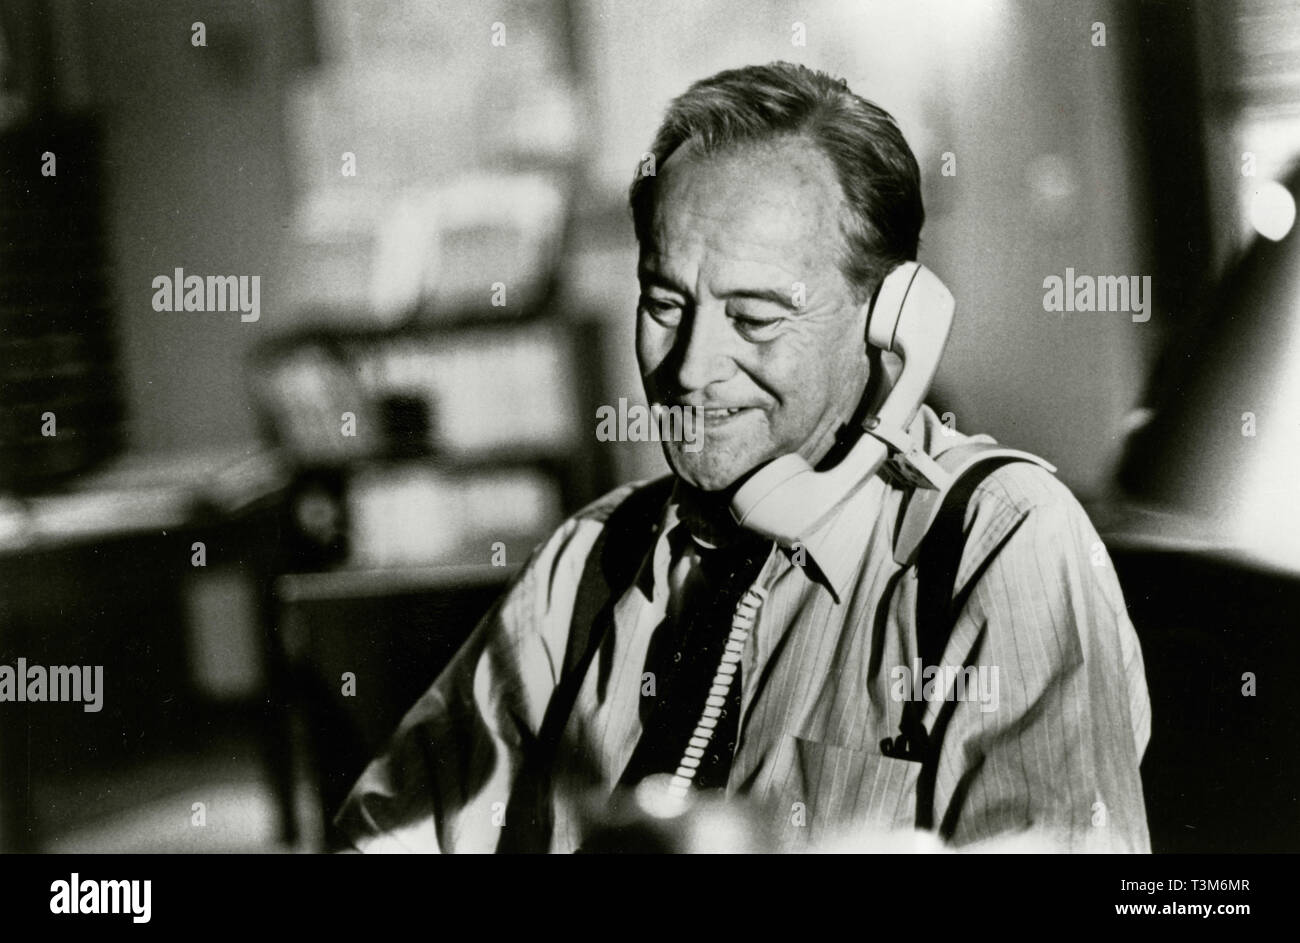 Jack Lemmon in the movie Glengarry Glen Ross, 1992 Stock Photo